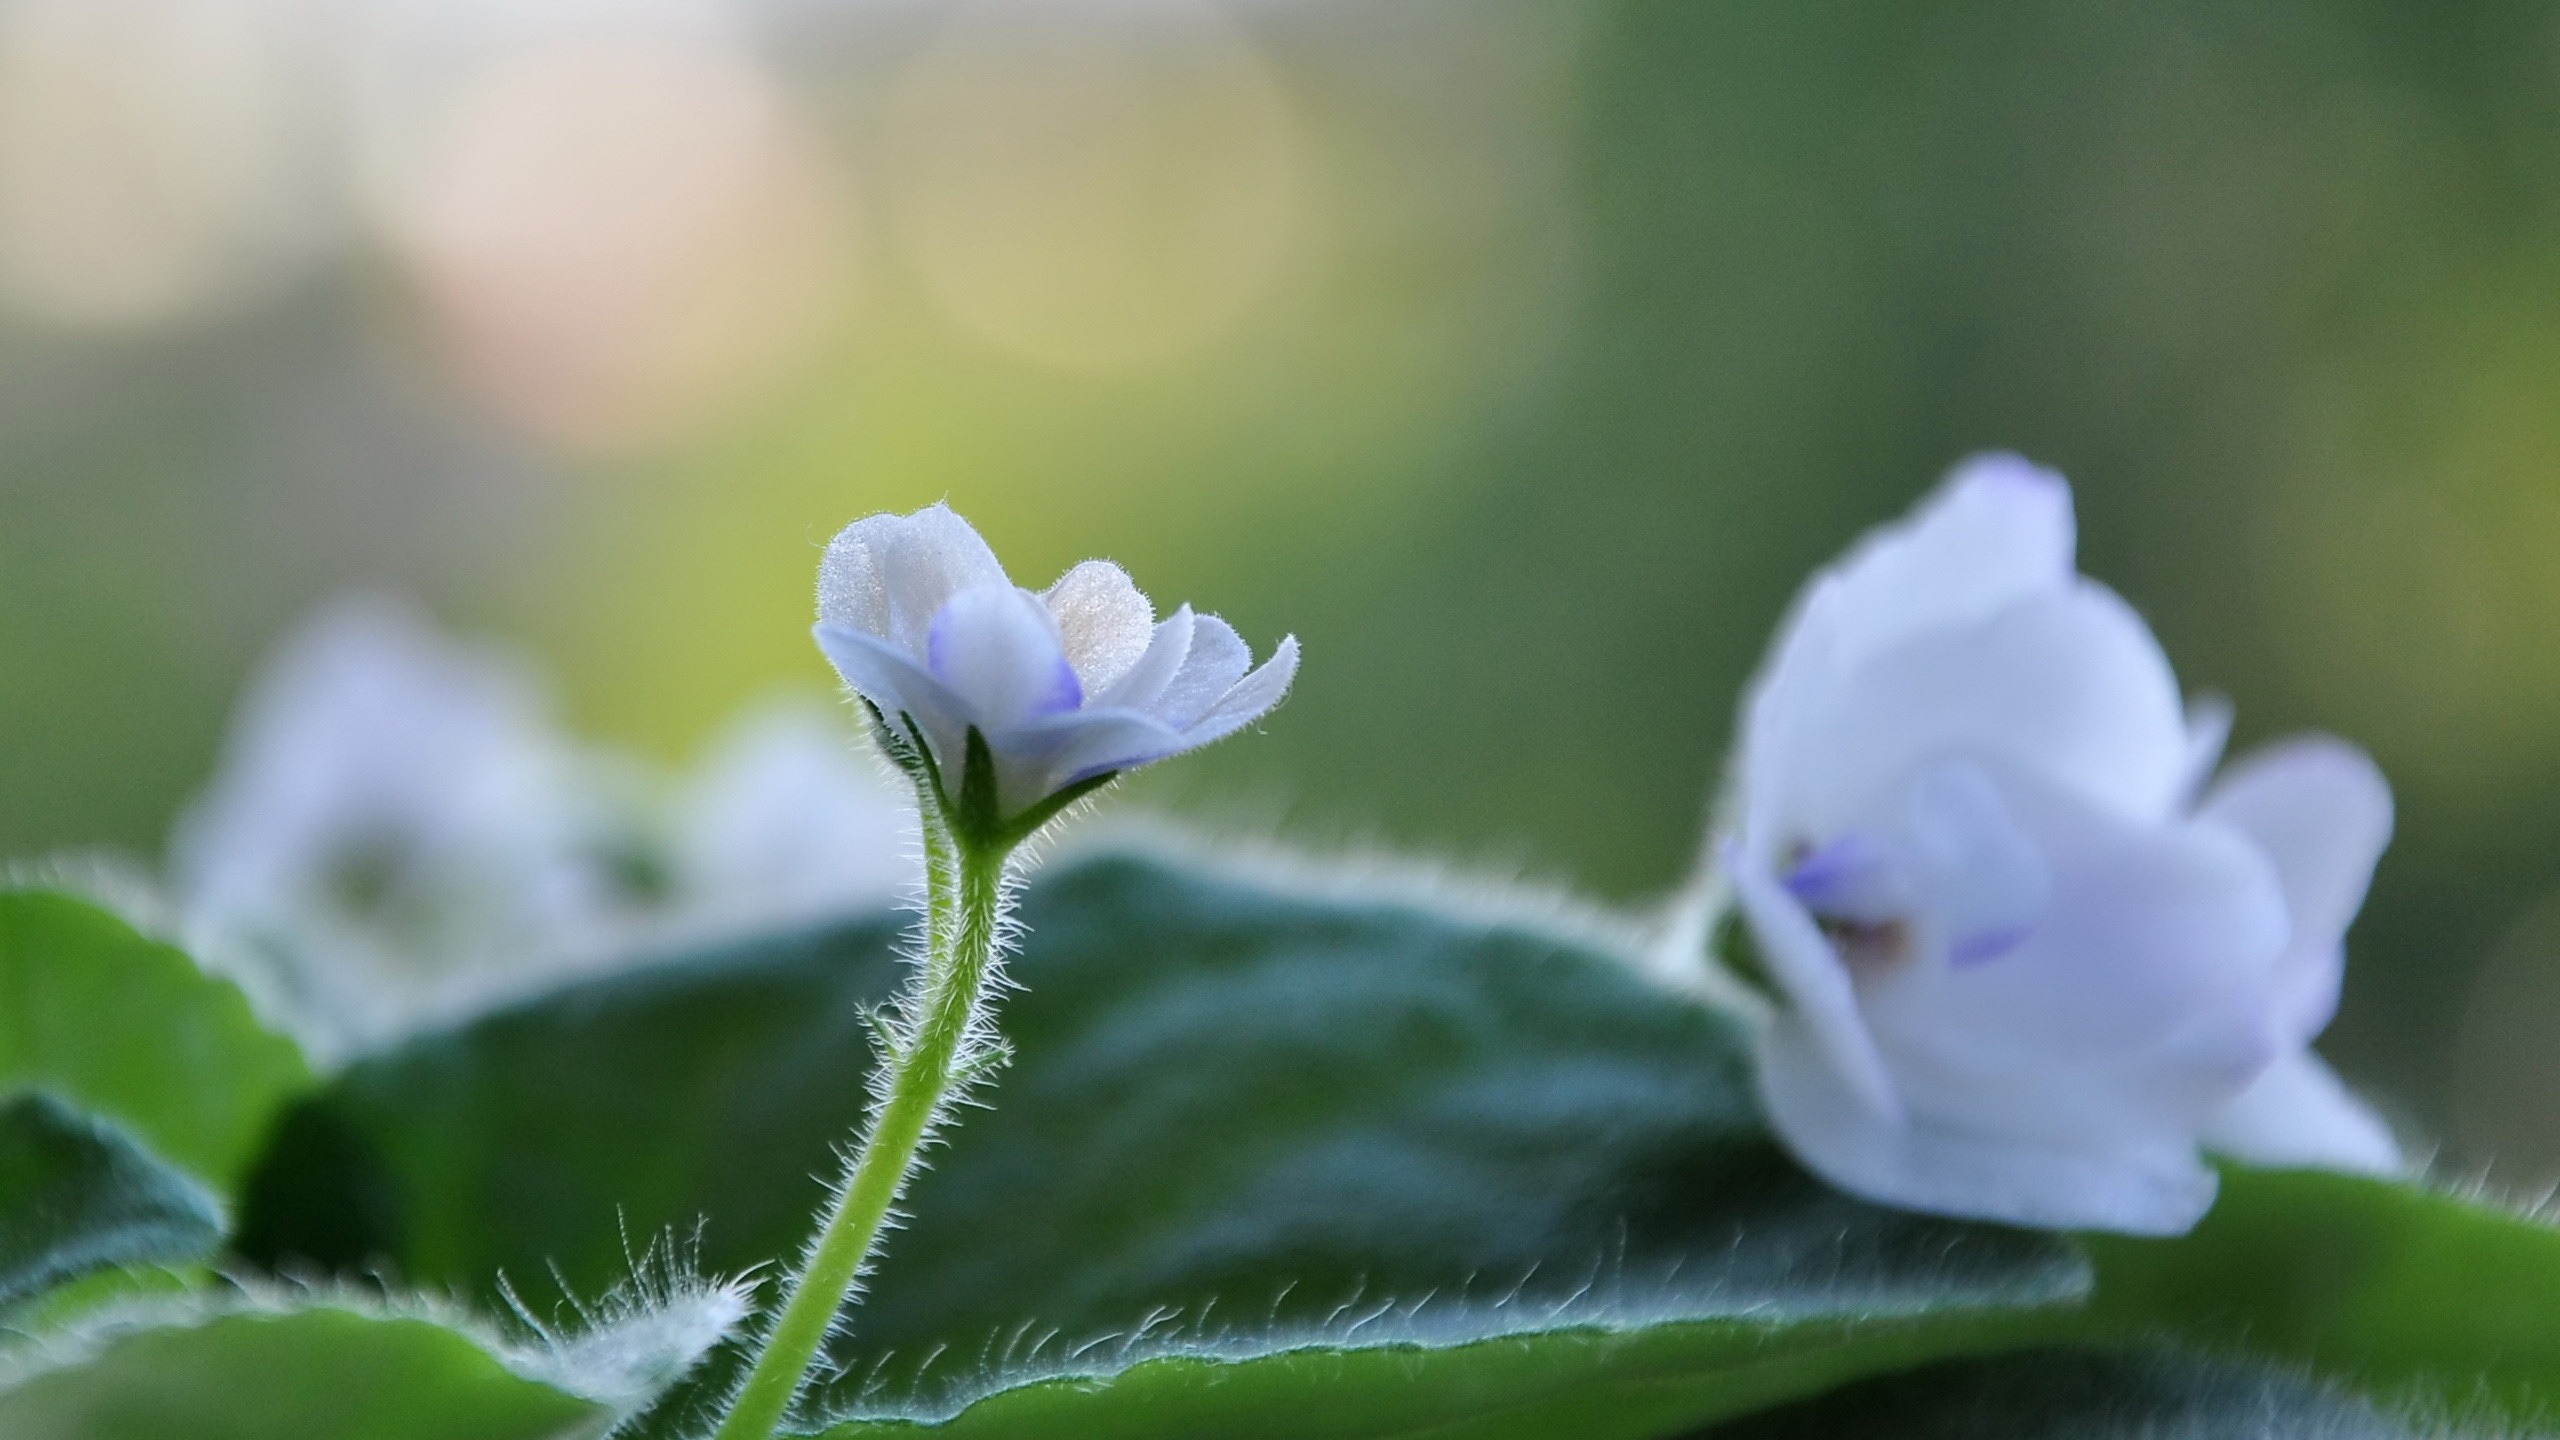 White Cute Flower for 2560x1440 HDTV resolution